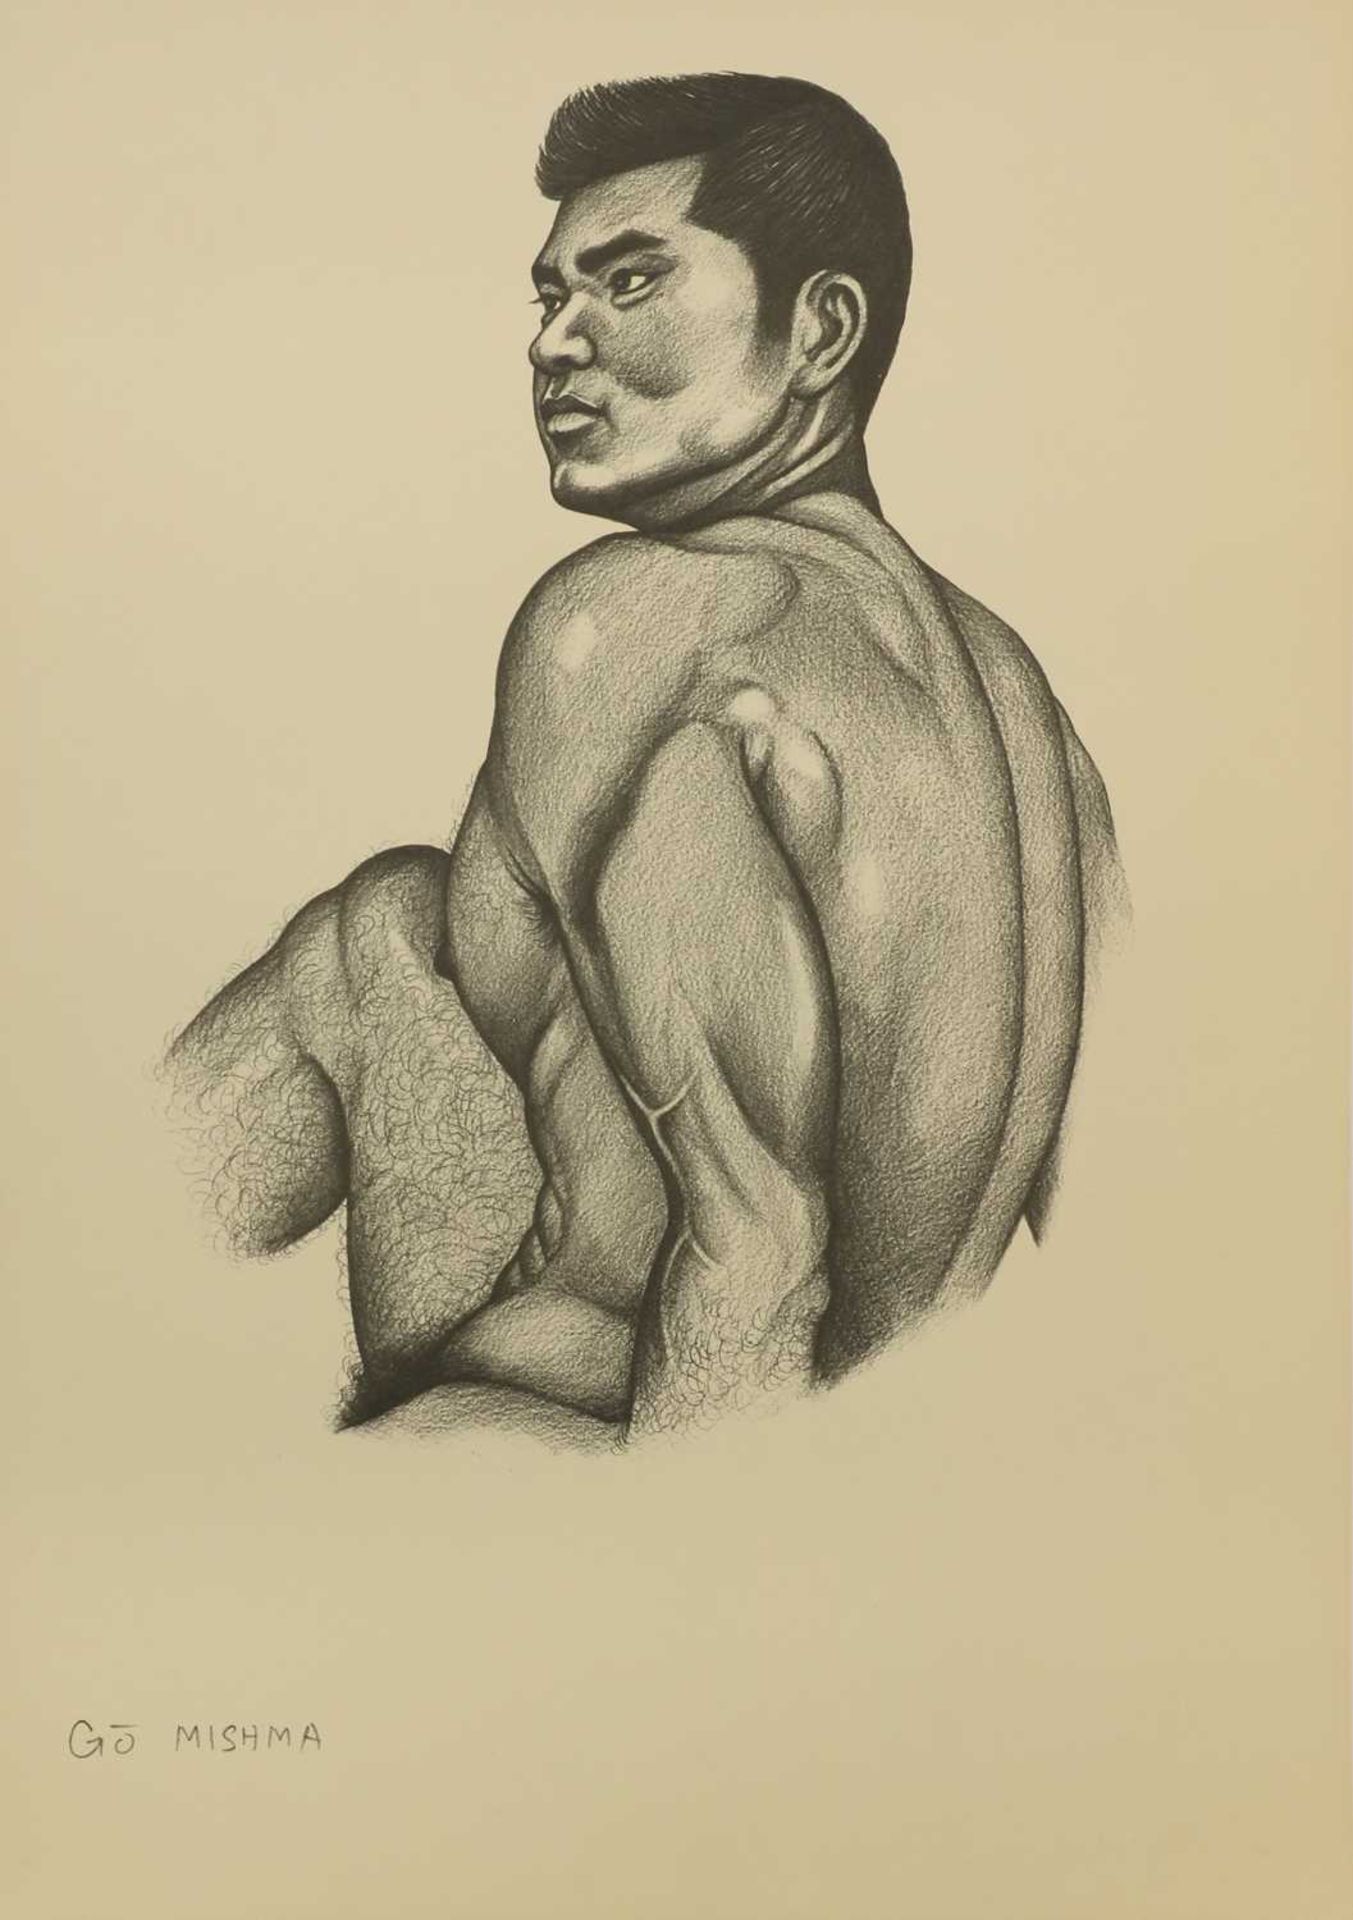 Mishima Go (1921-81), - Bild 7 aus 28